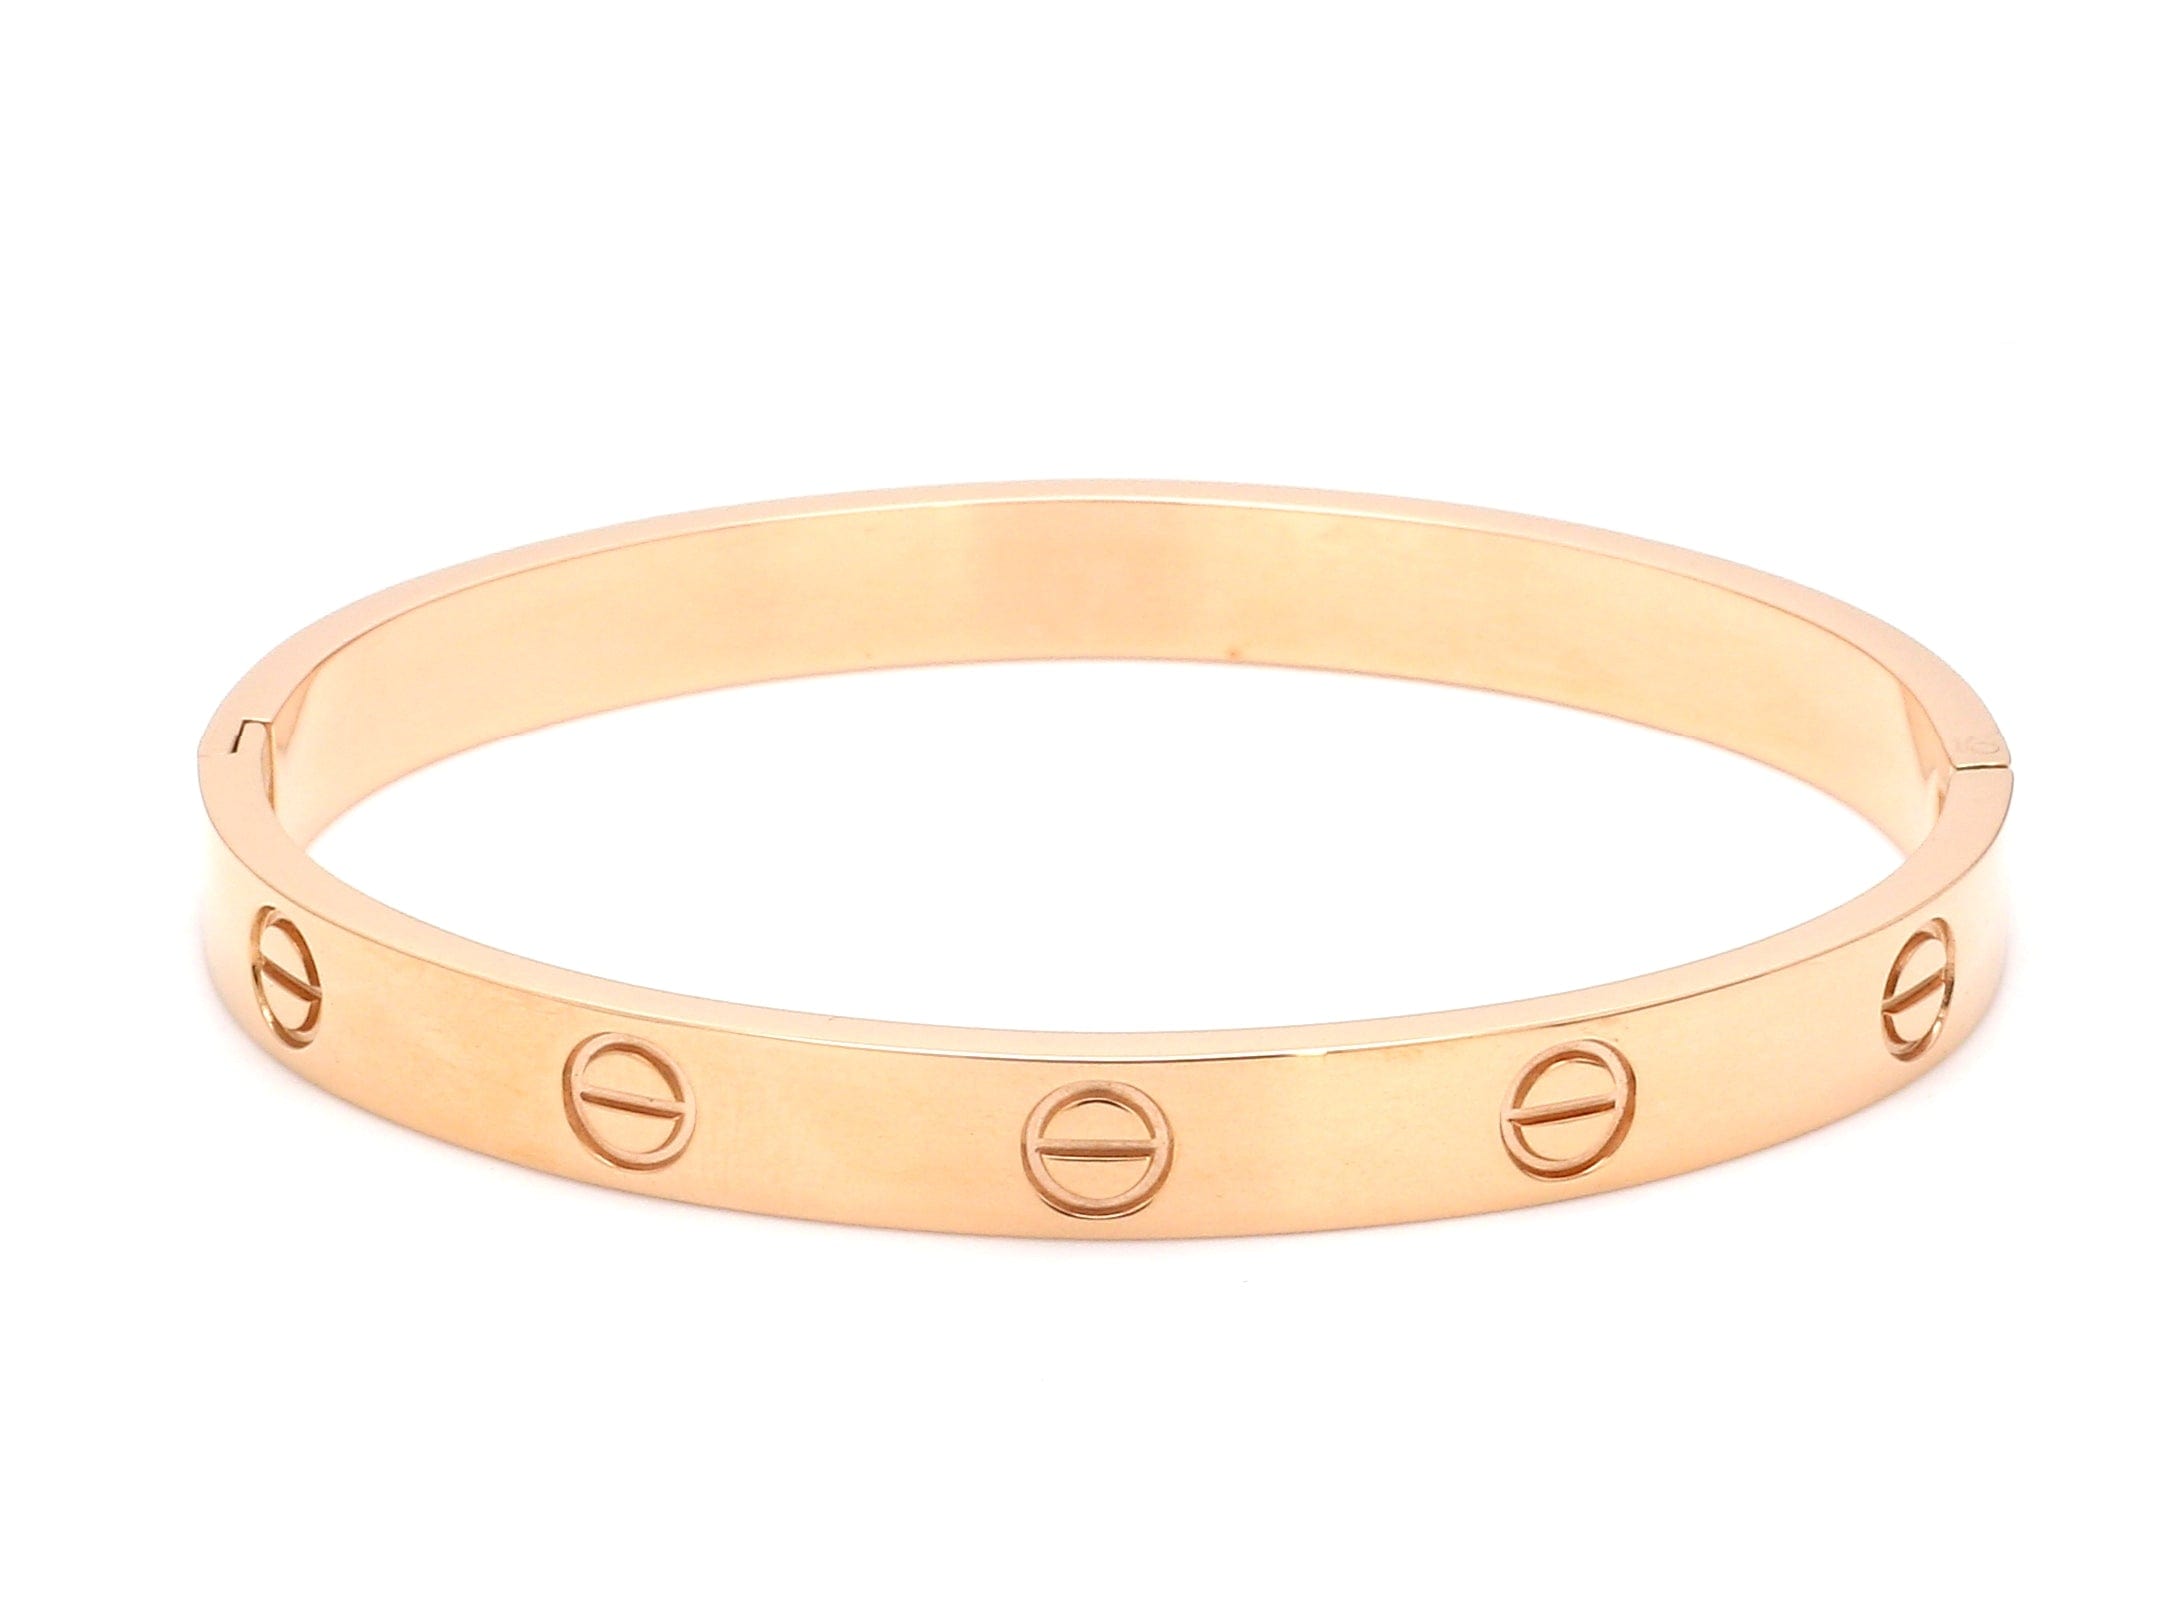 Black gold bracelet with 18kt gold plating 